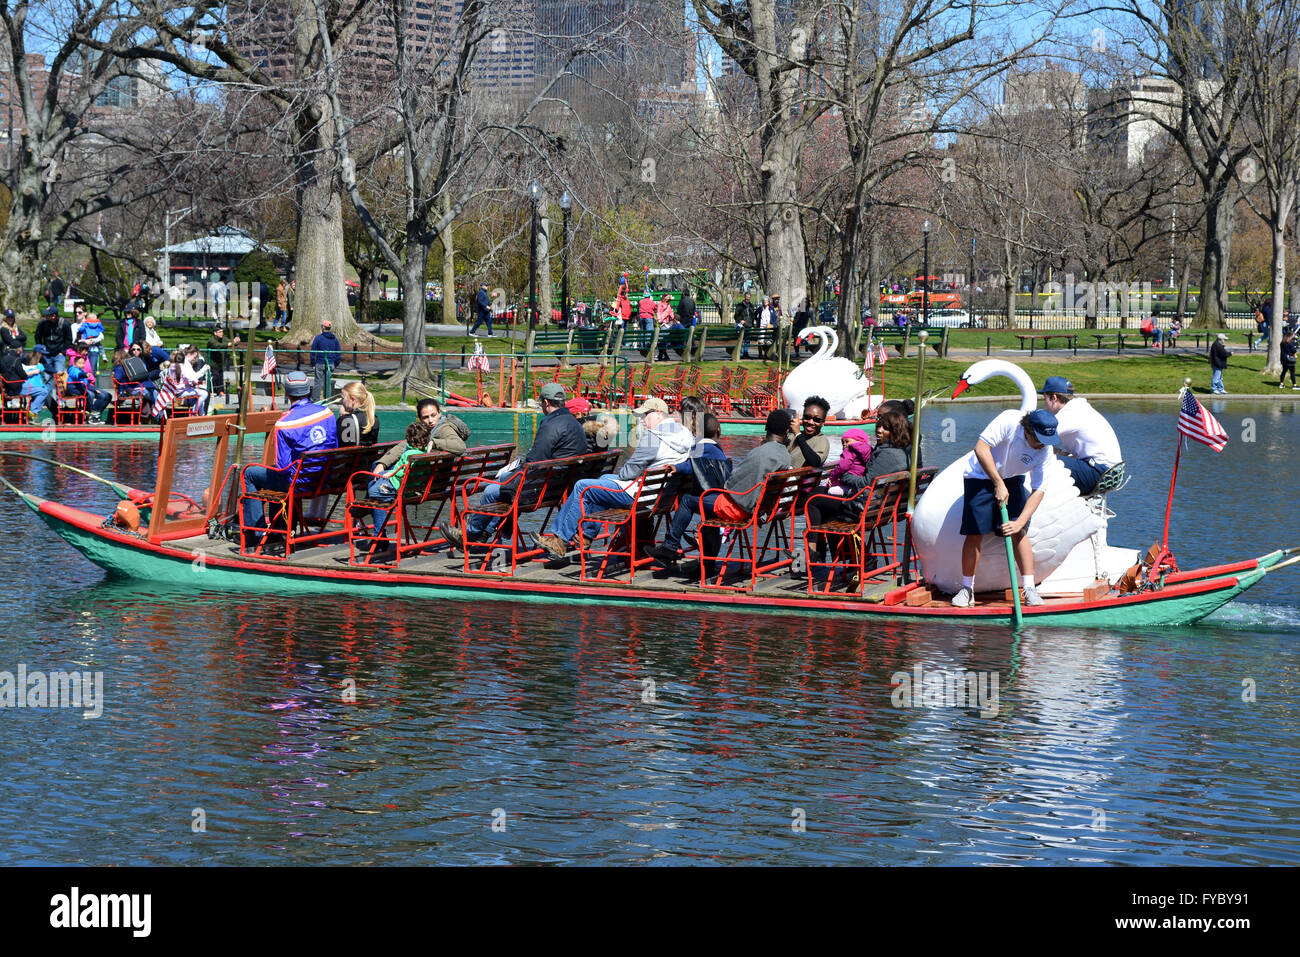 Swan Boats in Boston's Public Garden. Stock Photo